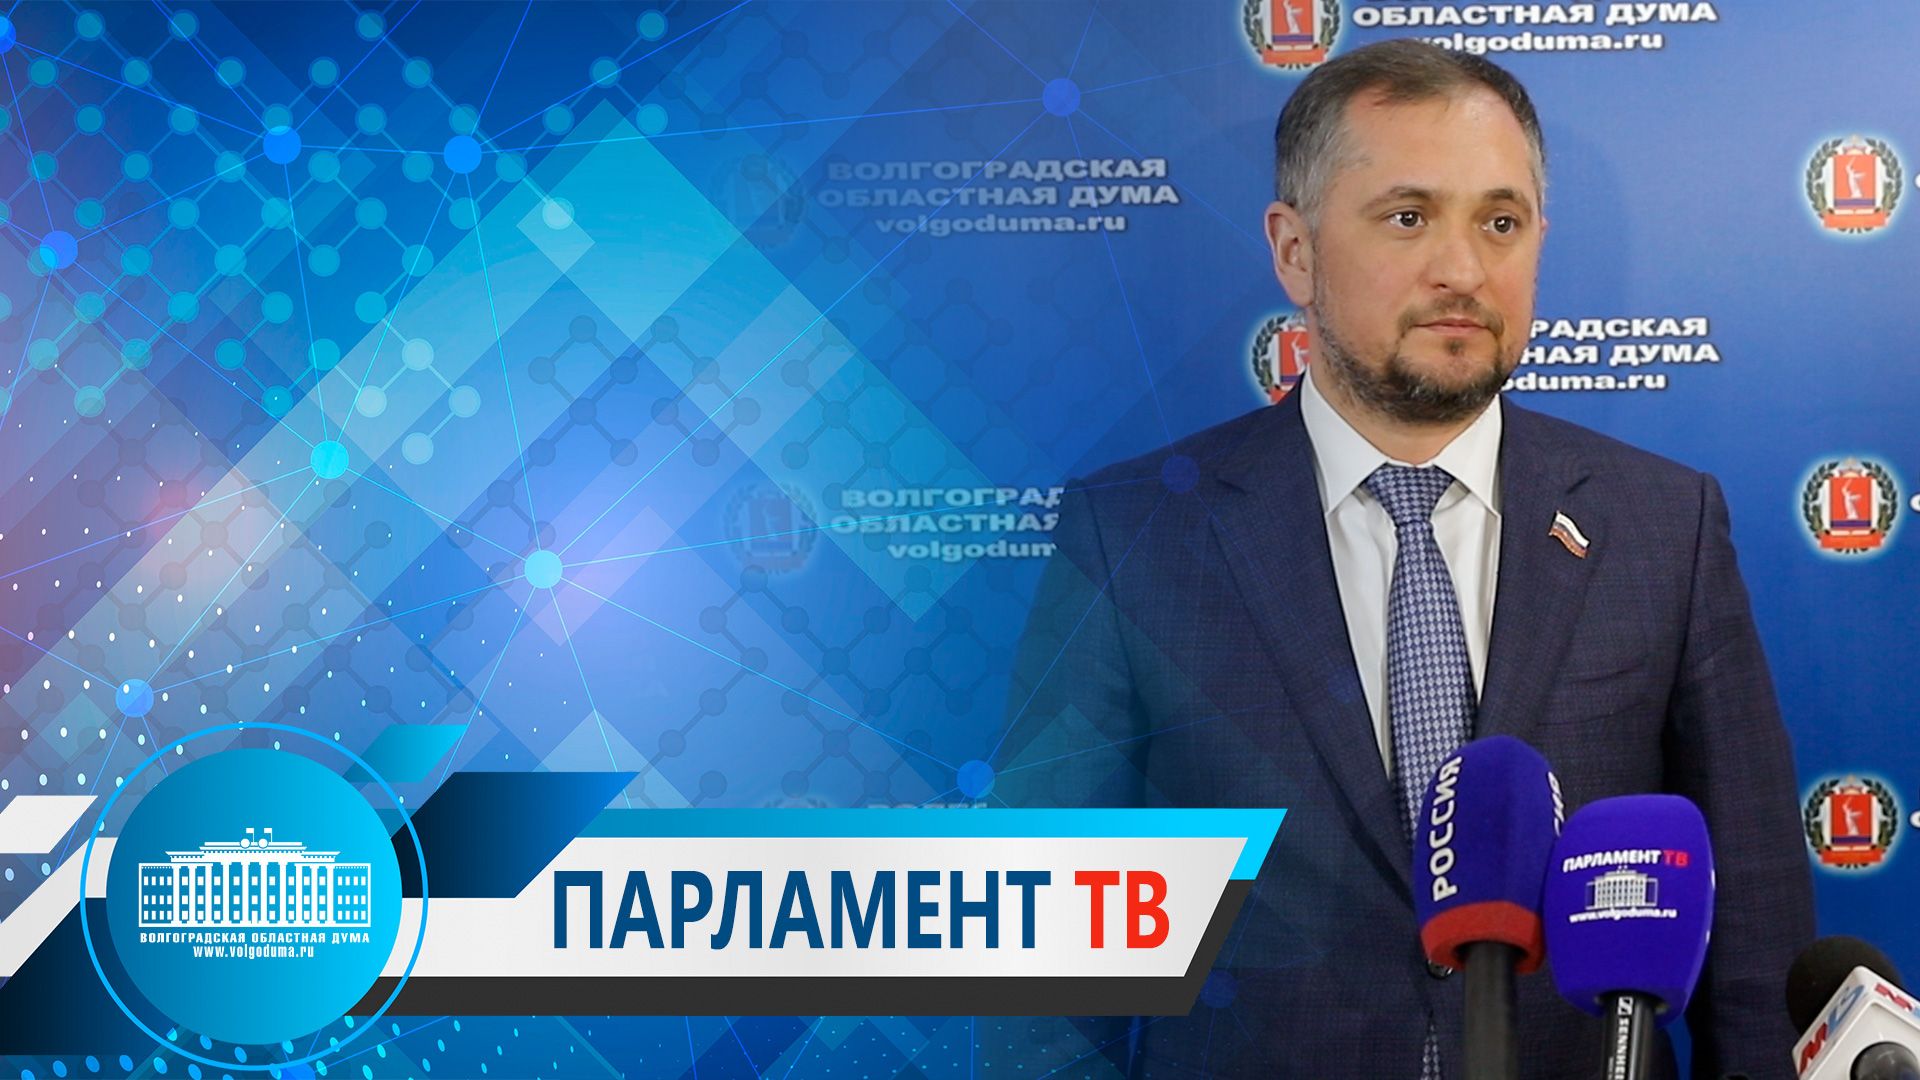 Андрей Таев: "Реализации нацпрограммы «Цифровая экономика»  уделяется самое пристальное внимание"